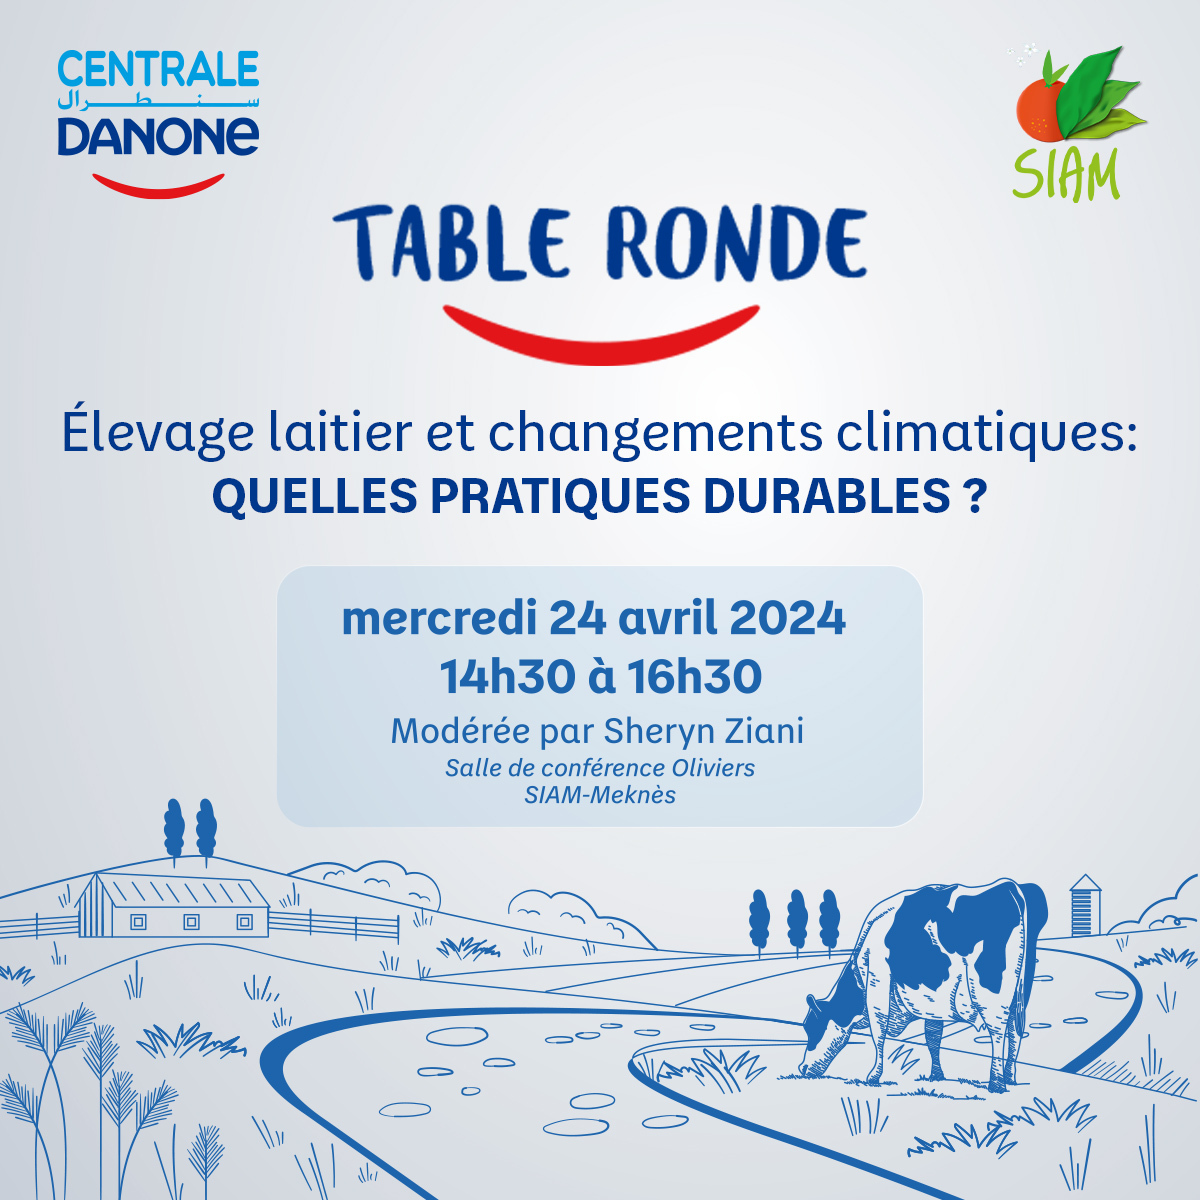 SIAM 2024 : Centrale Danone organise une table ronde sur « l’élevage laitier face aux changements climatiques »